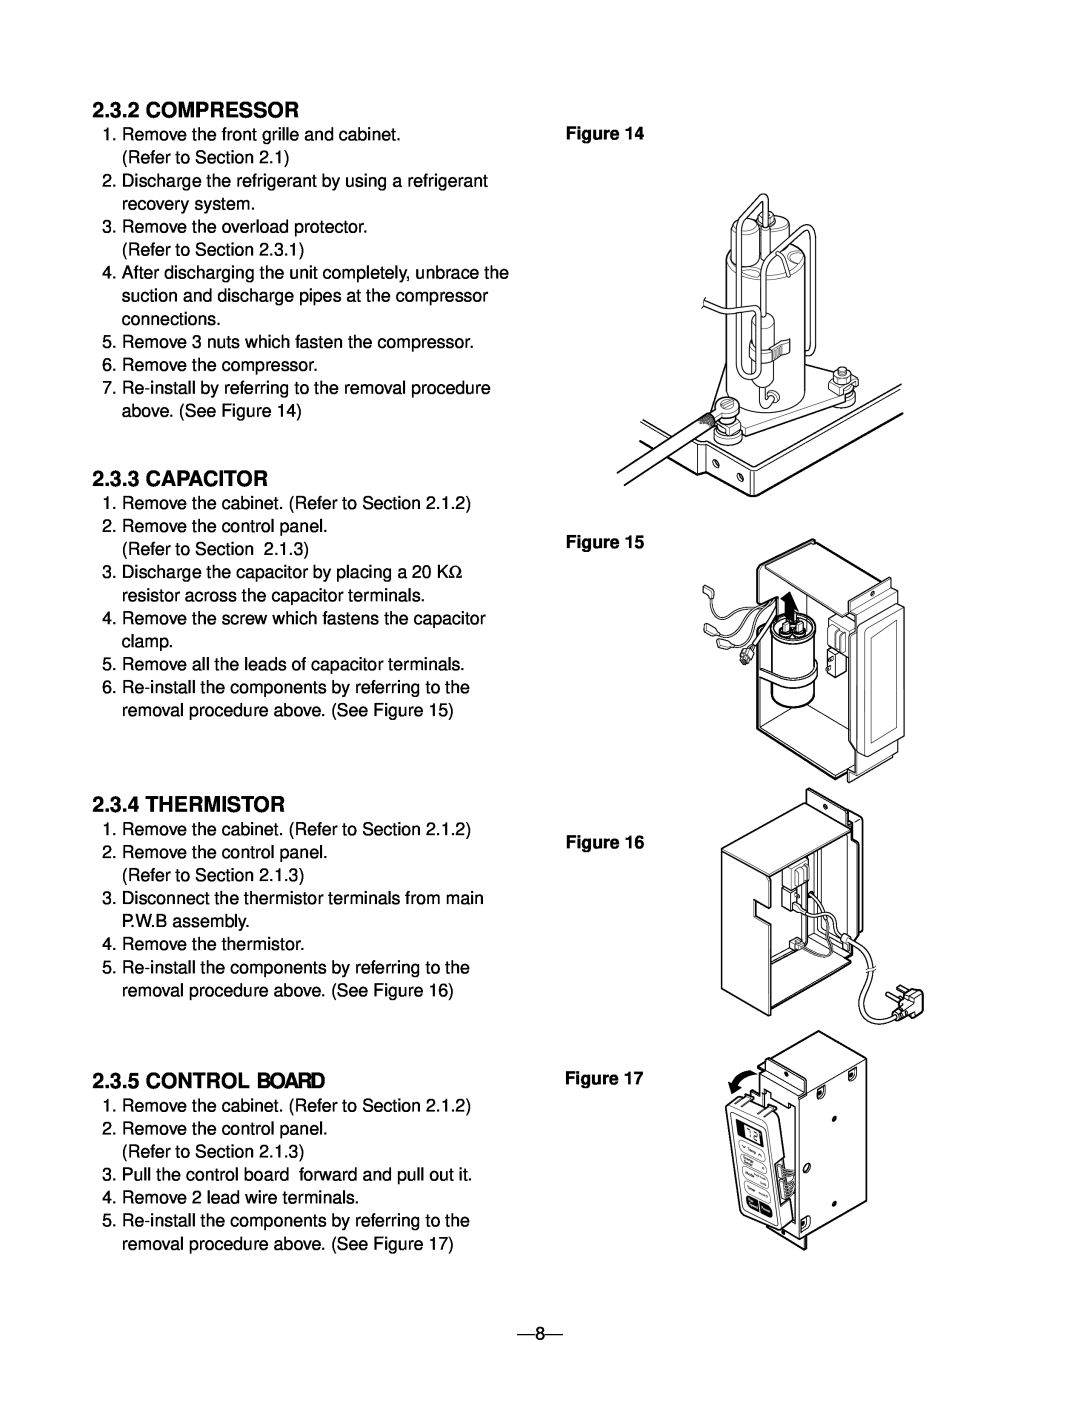 Heat Controller RADS-51B manual Compressor, Capacitor, Thermistor, Control Board, Figure Figure 